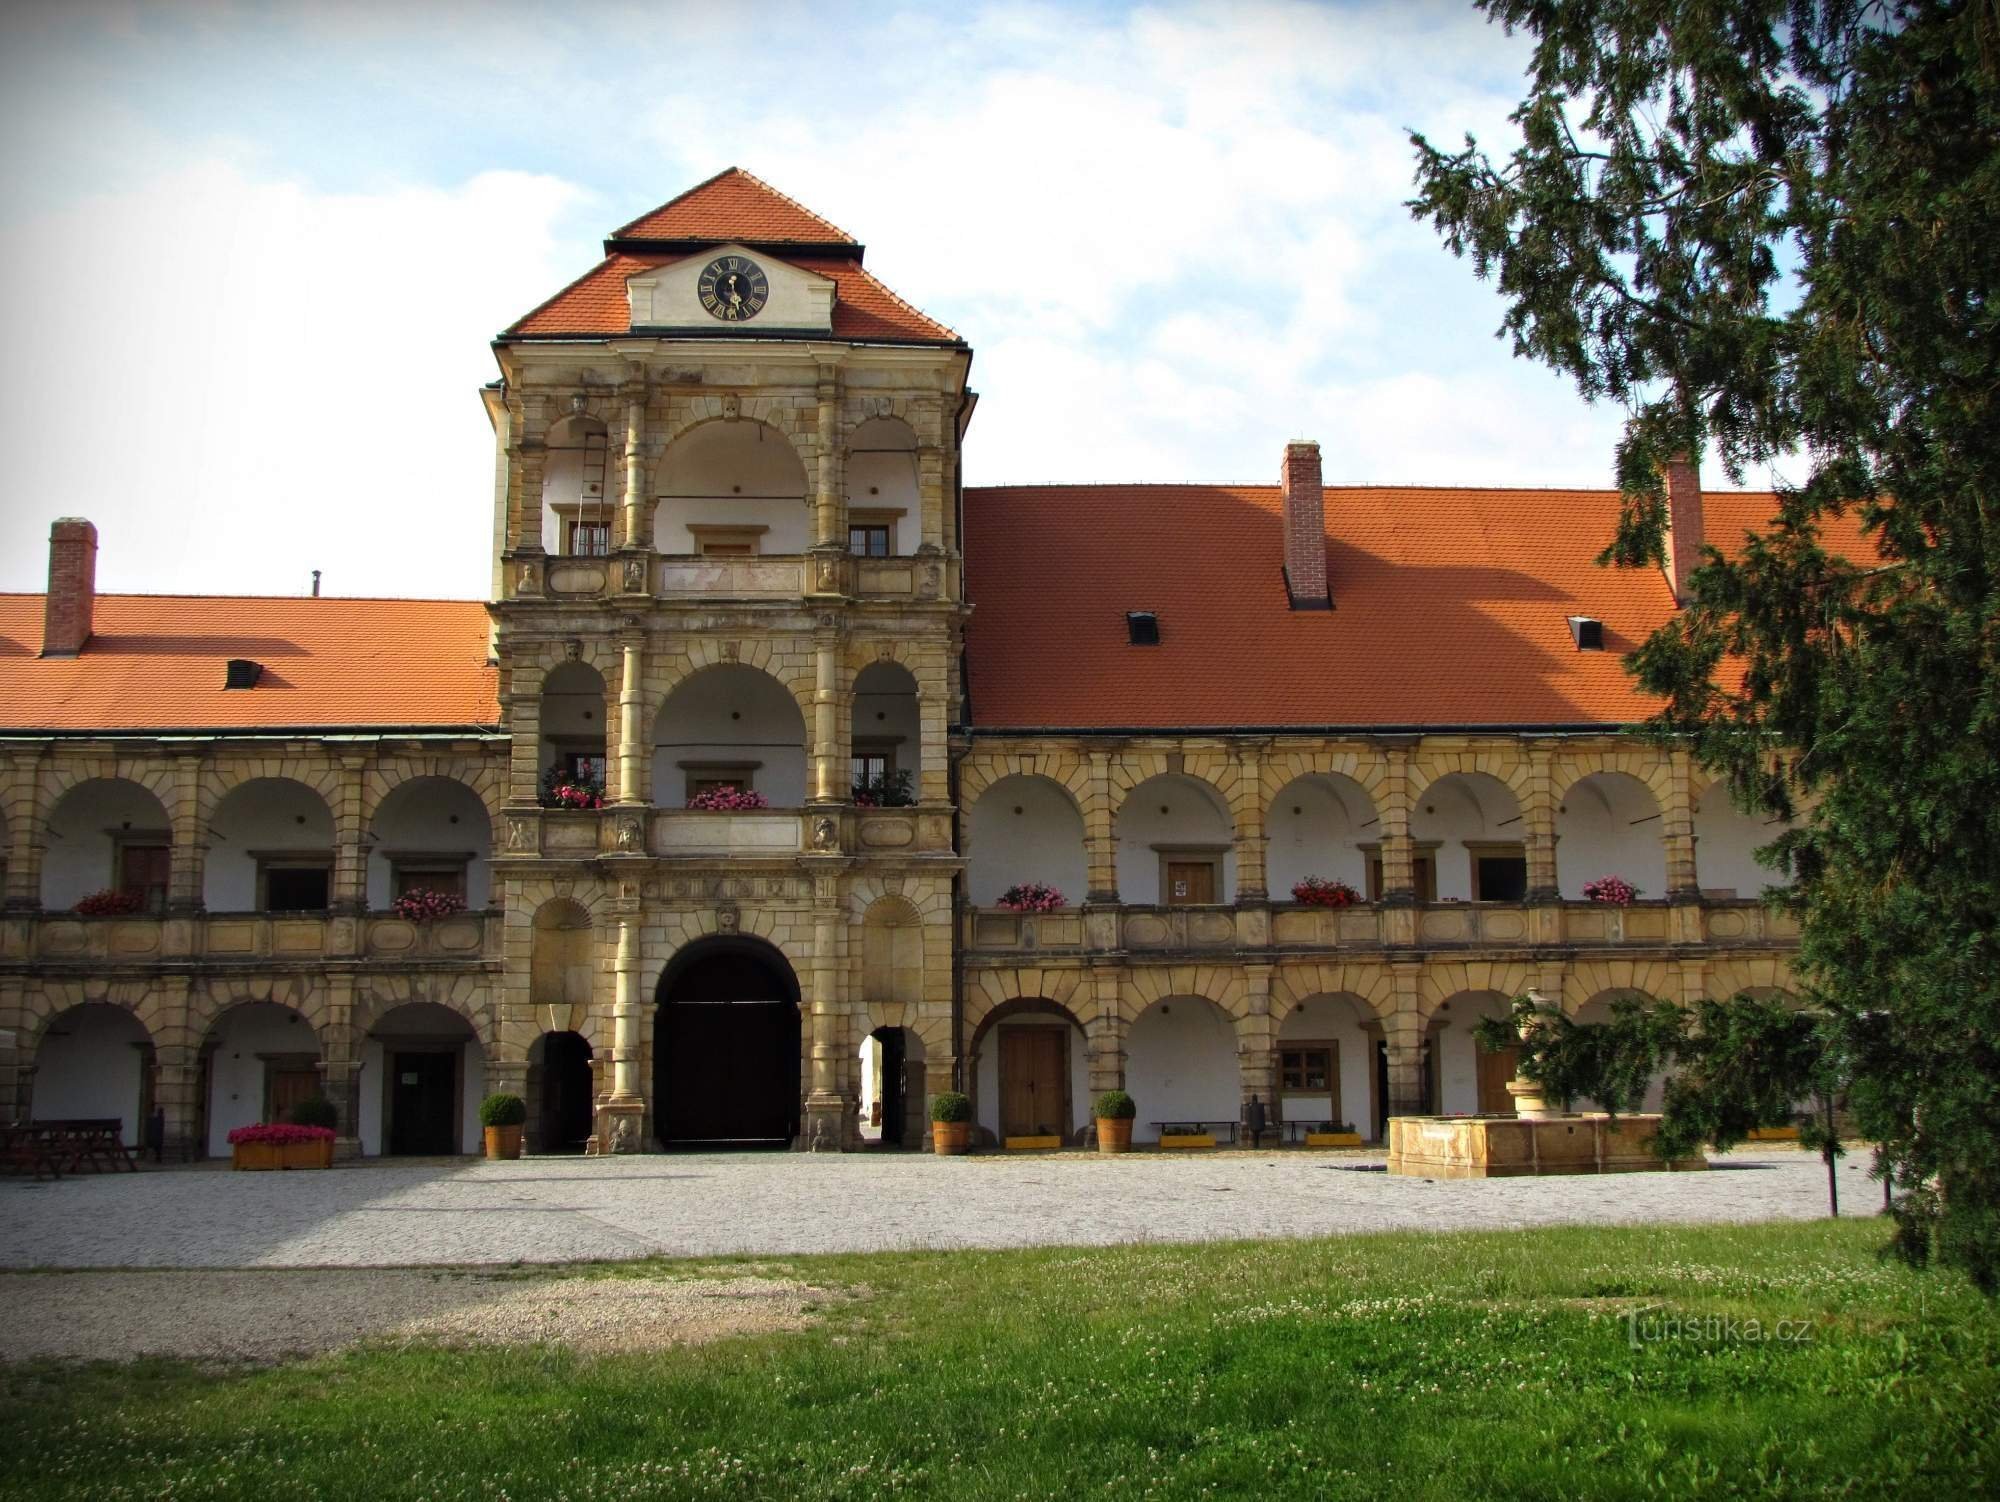 Terenul castelului din Moravská Třebová